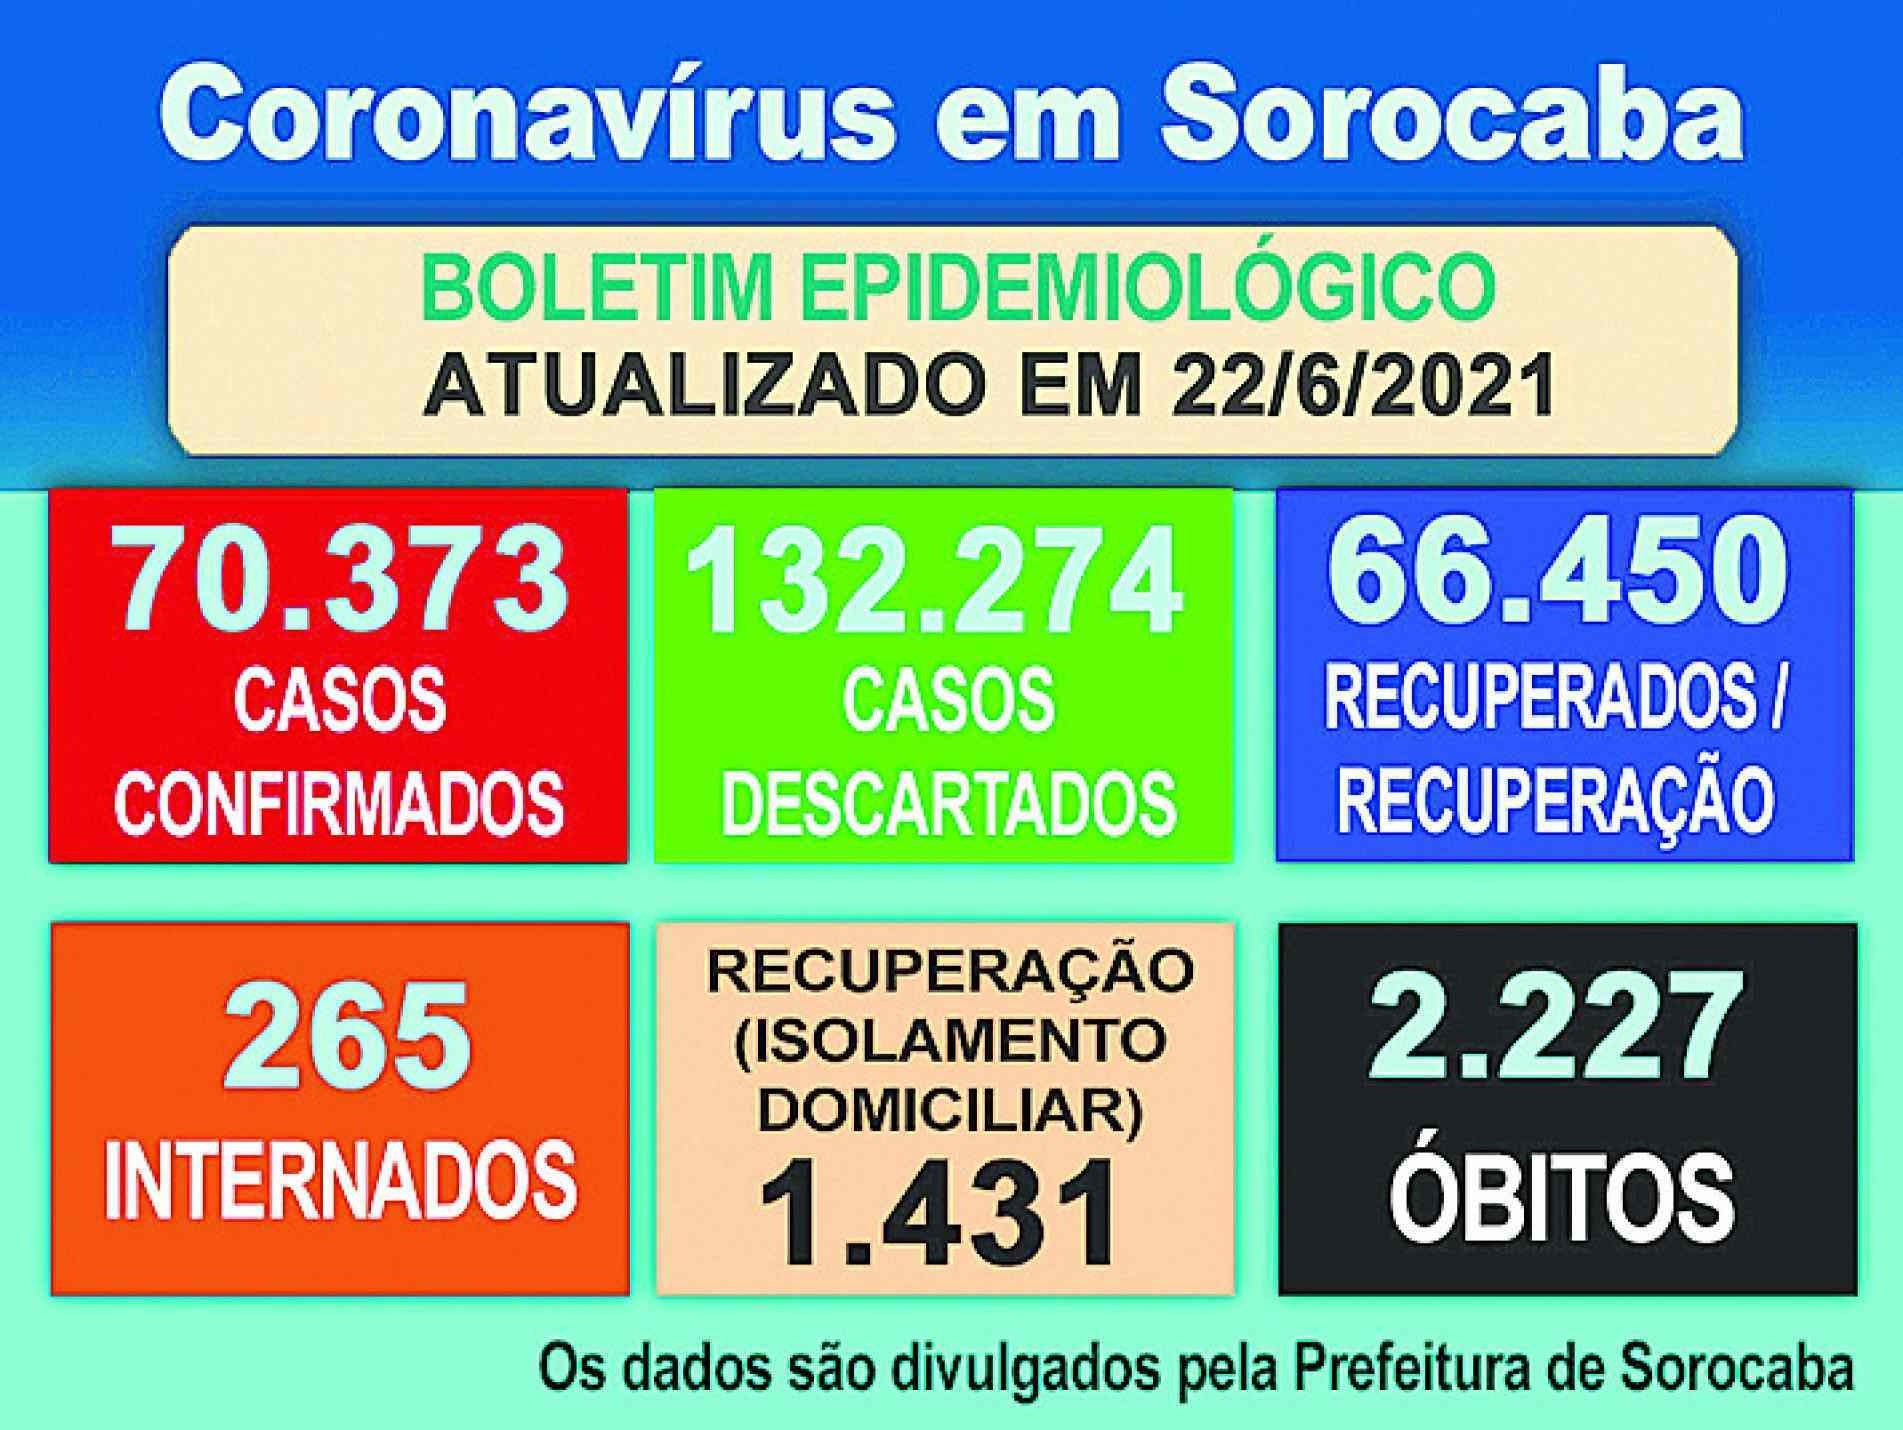 Boletim epidemiológico. Os dados são divulgados pela Prefeitura de Sorocaba.